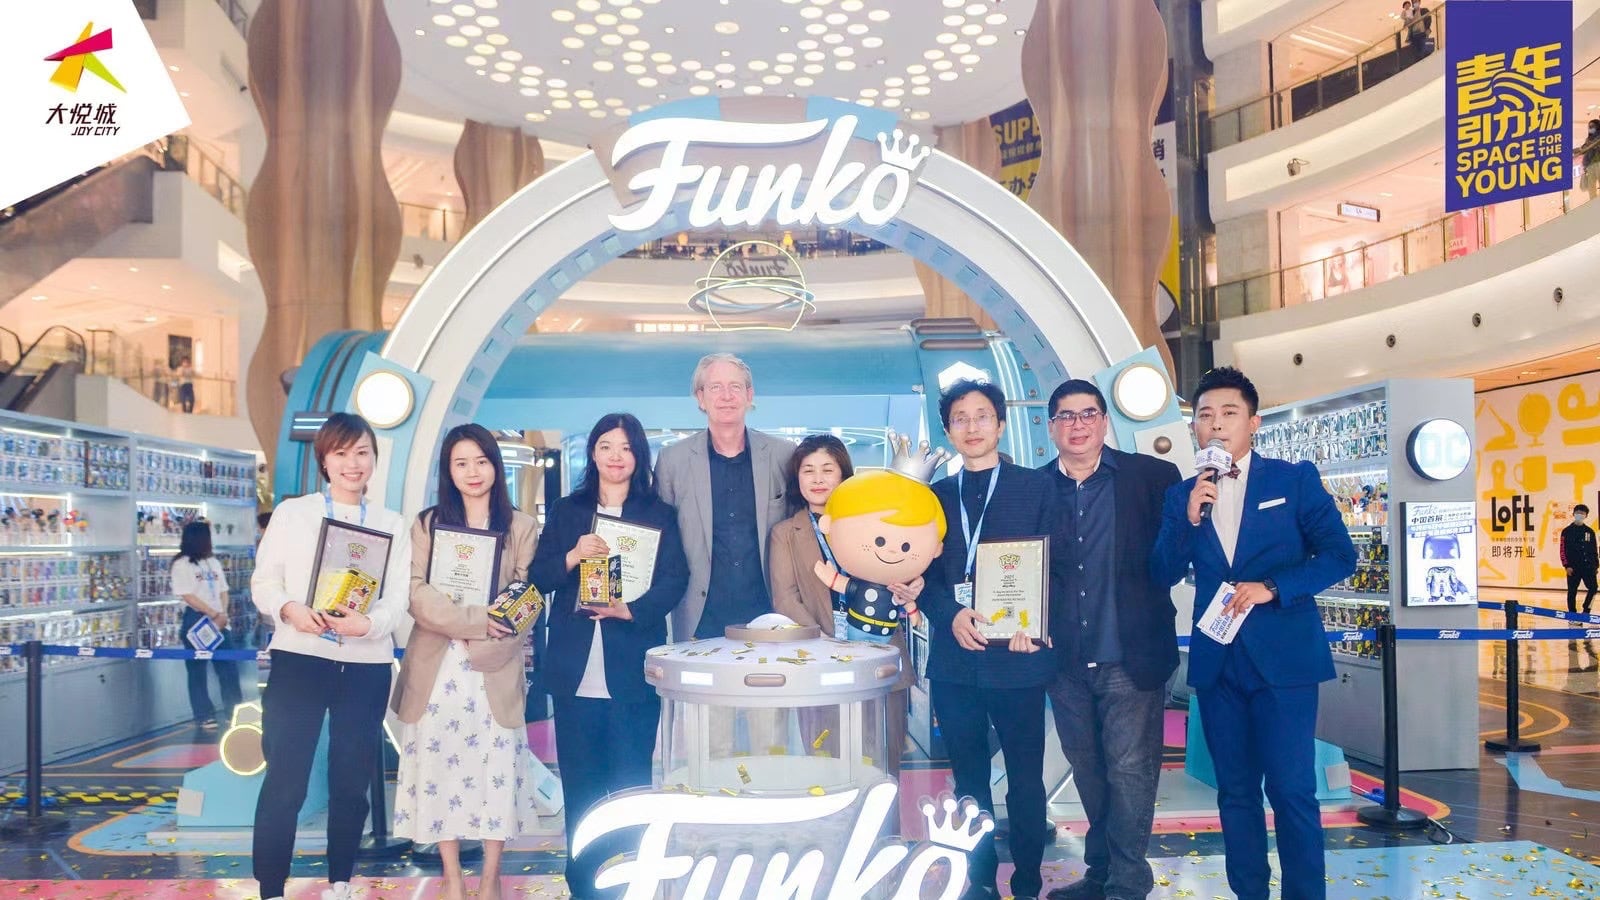 Funko“超能FUN研究所”快闪店&装置艺术展